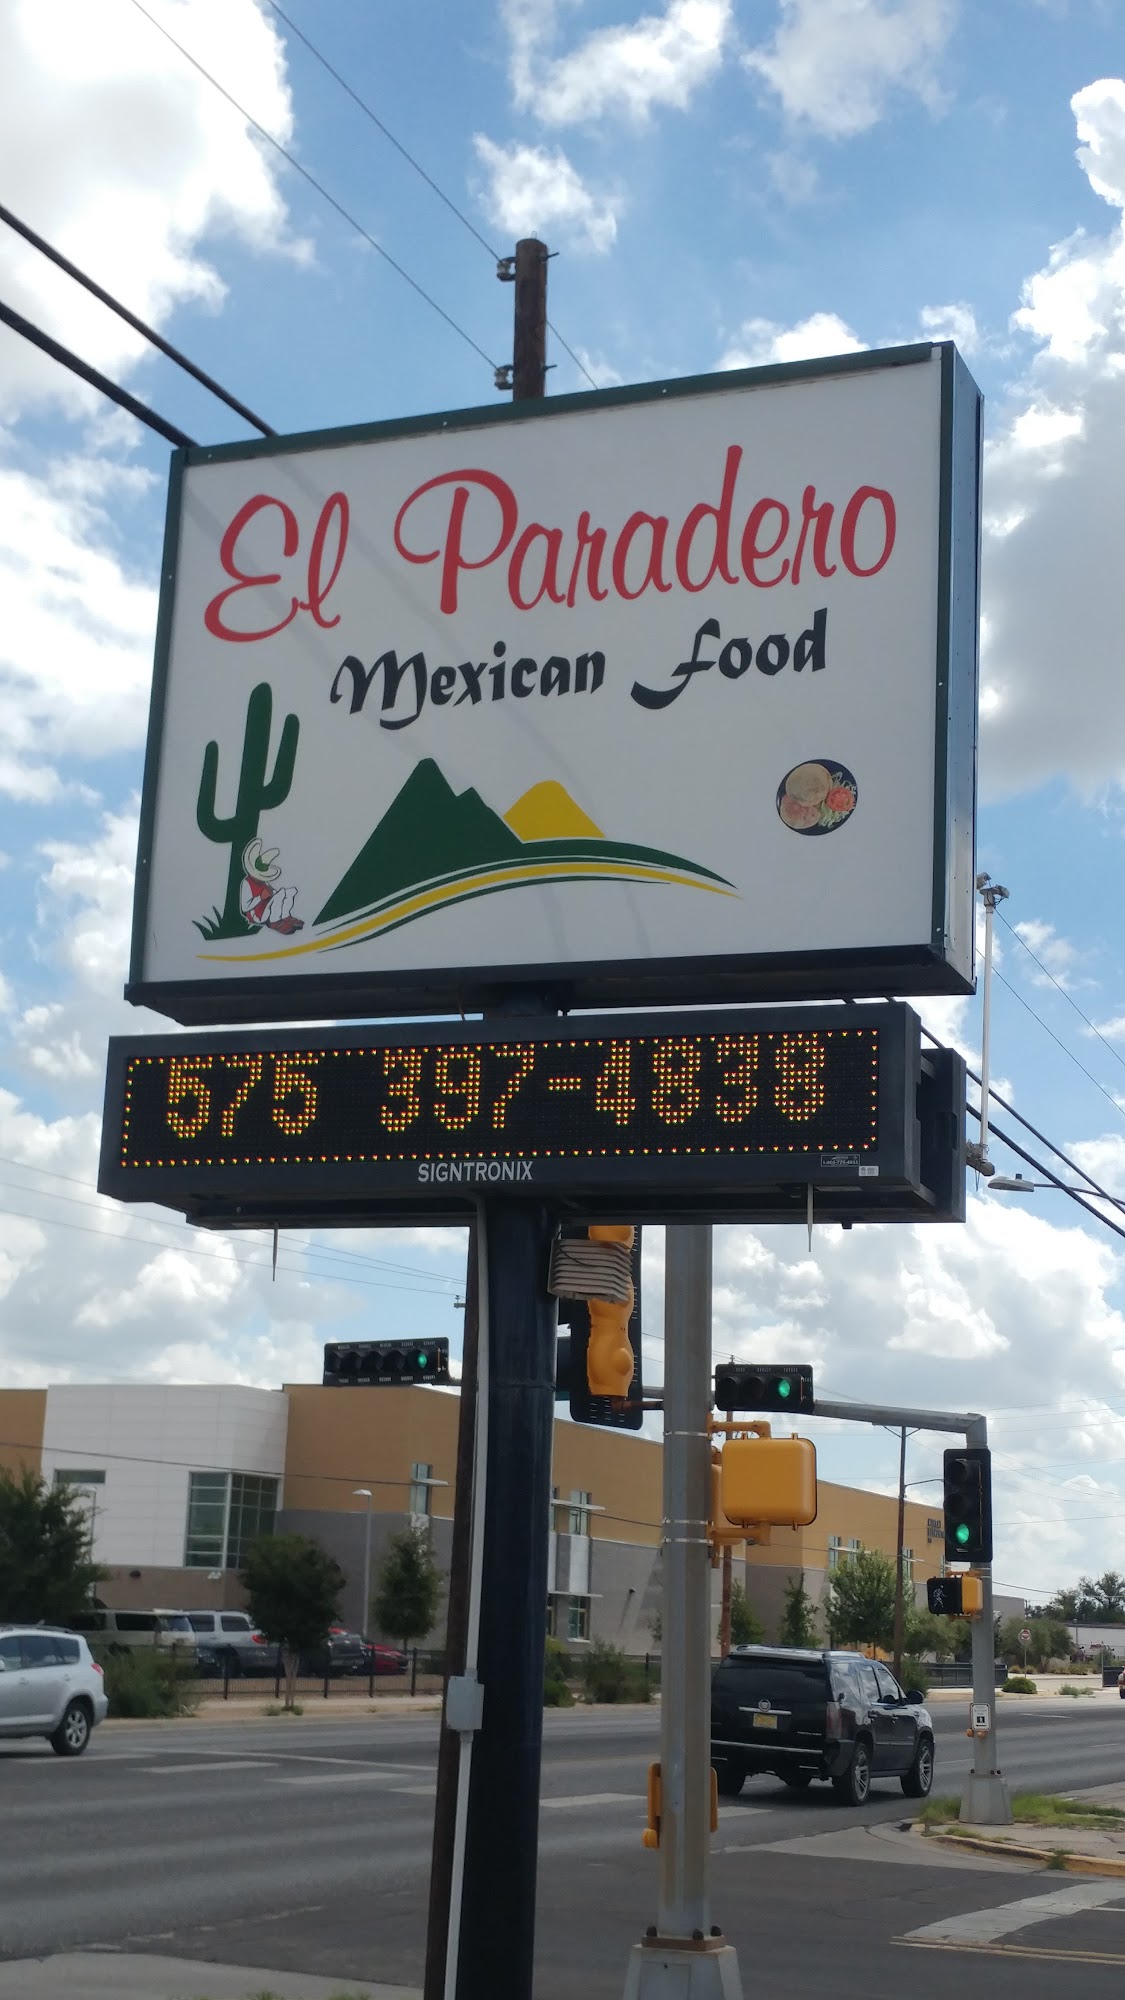 El Paradero Mexican restaurant